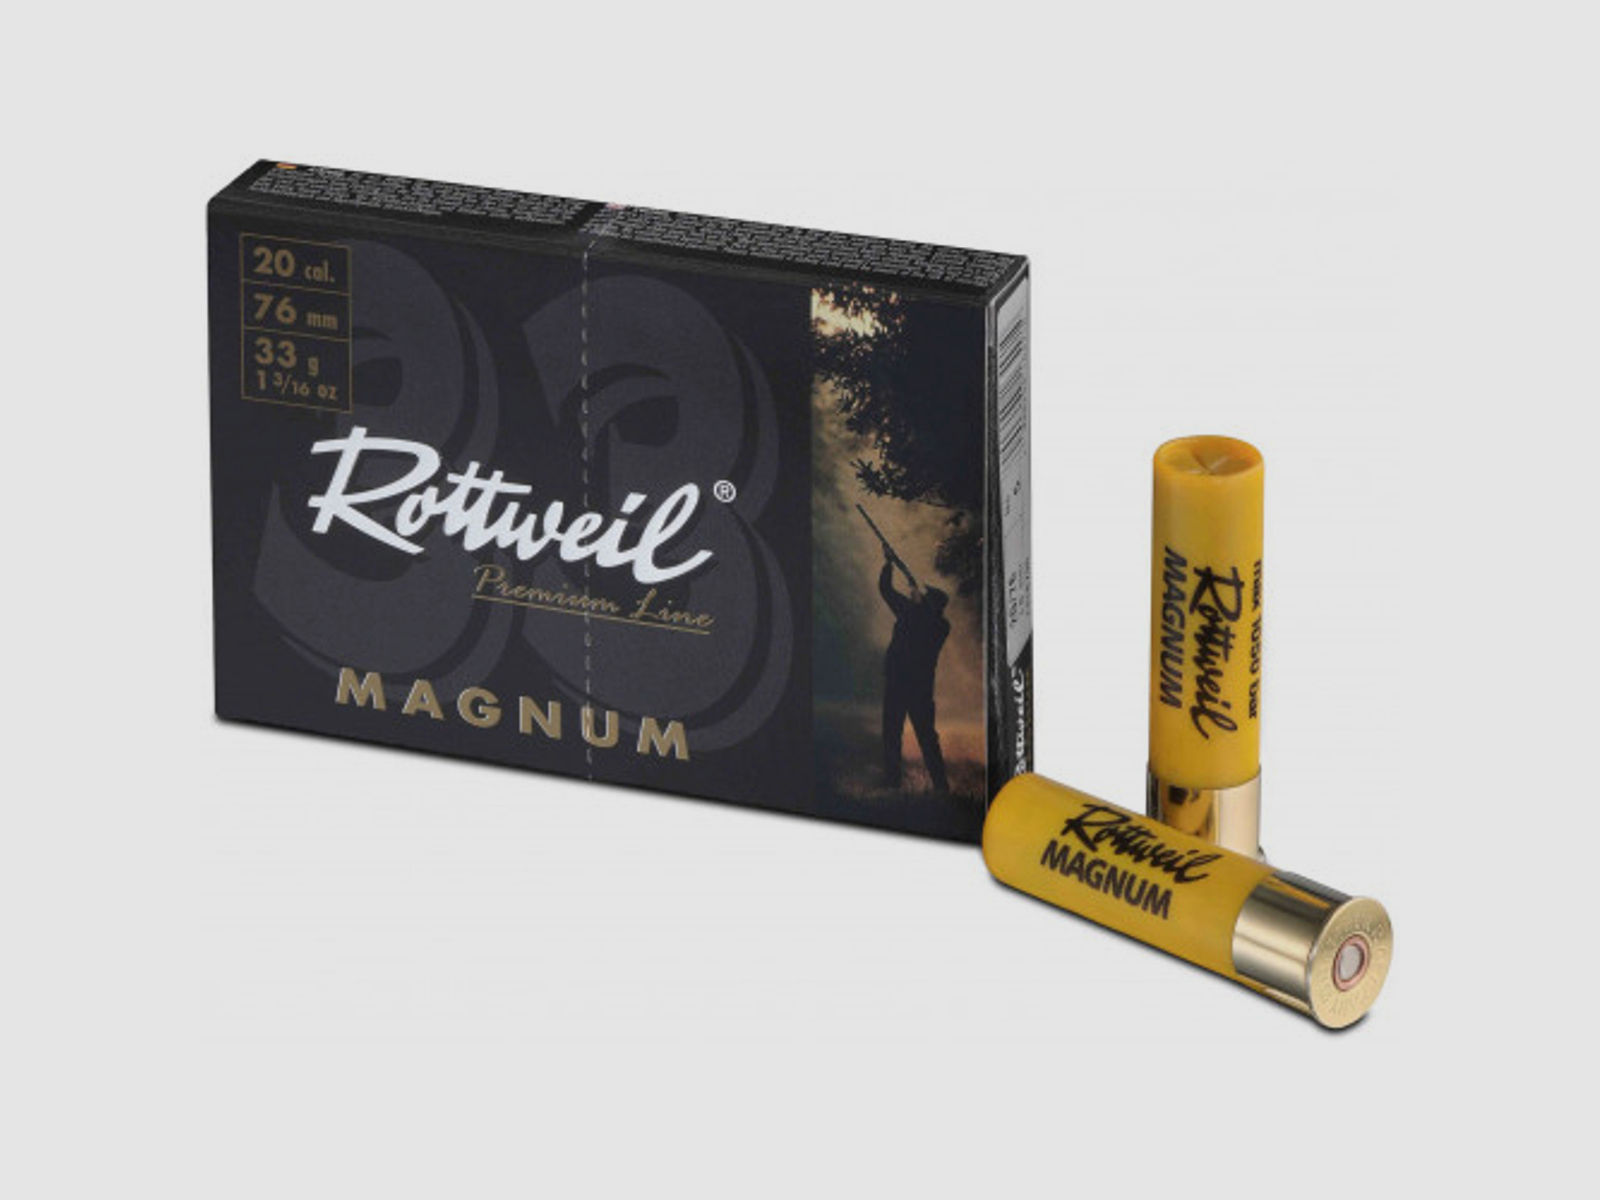 Rottweil Schrotpatronen Magnum 20/76 3,0